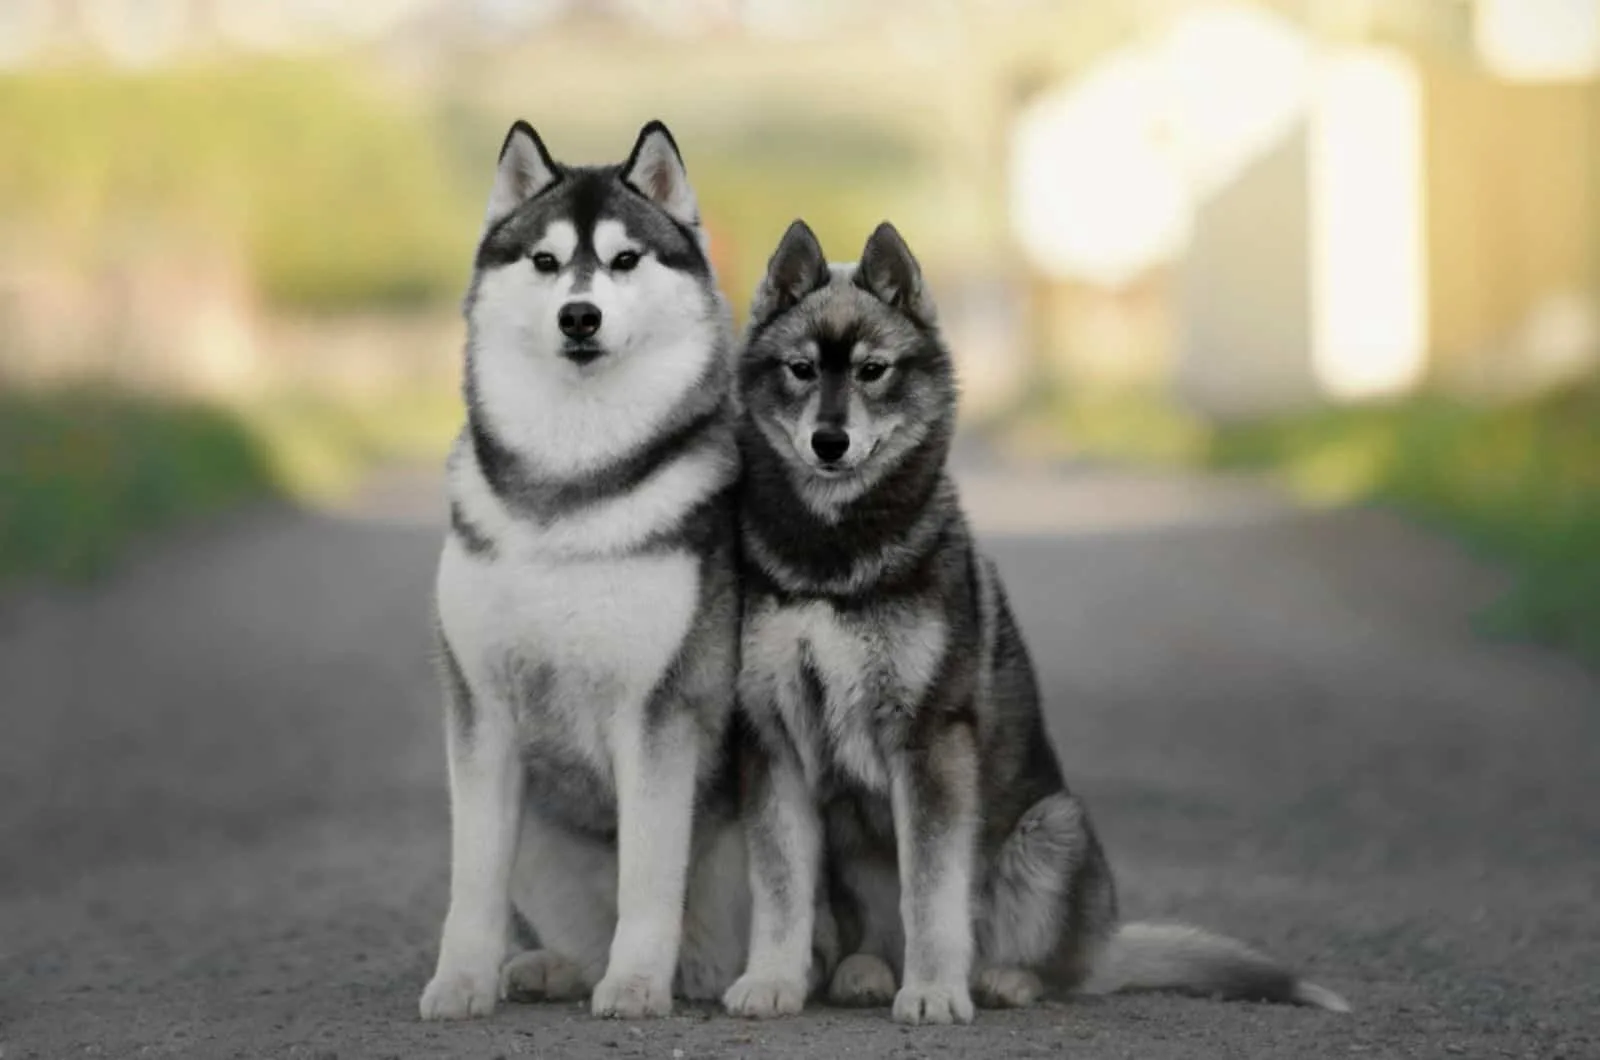 Cute agouti siberian husky dogs